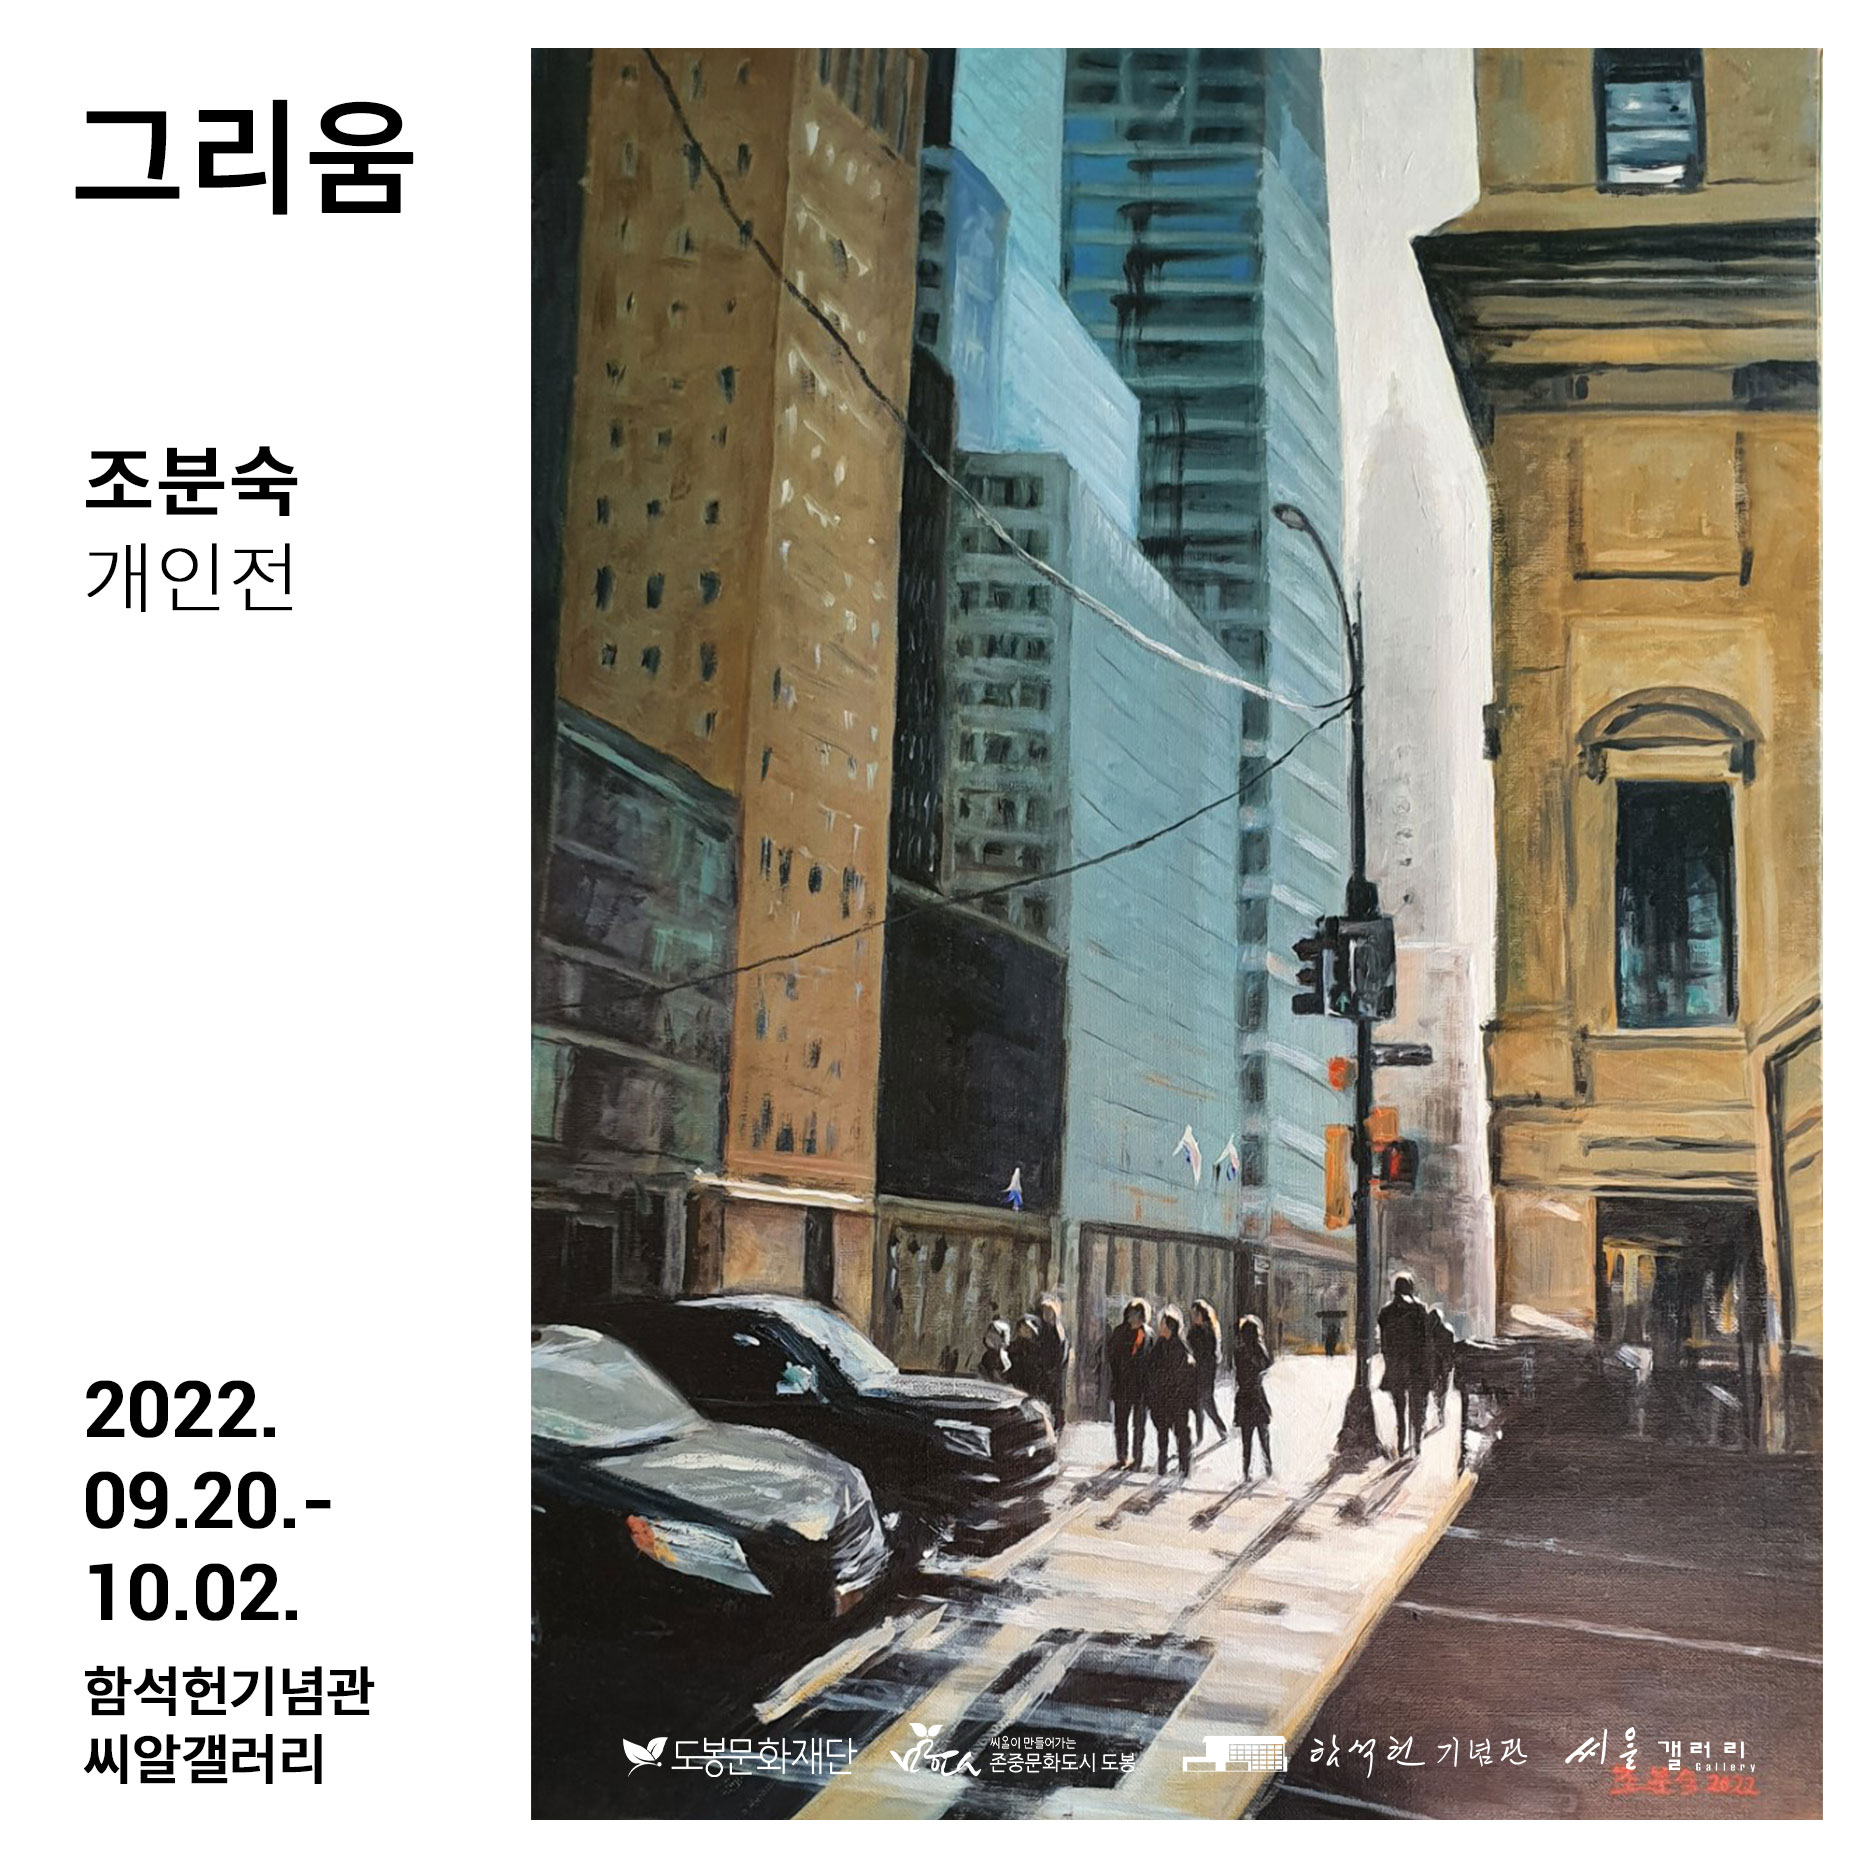 2022년 함석헌기념관 씨알갤러리 정기 대관 전시 조분숙 작가 개인전 <그리움>